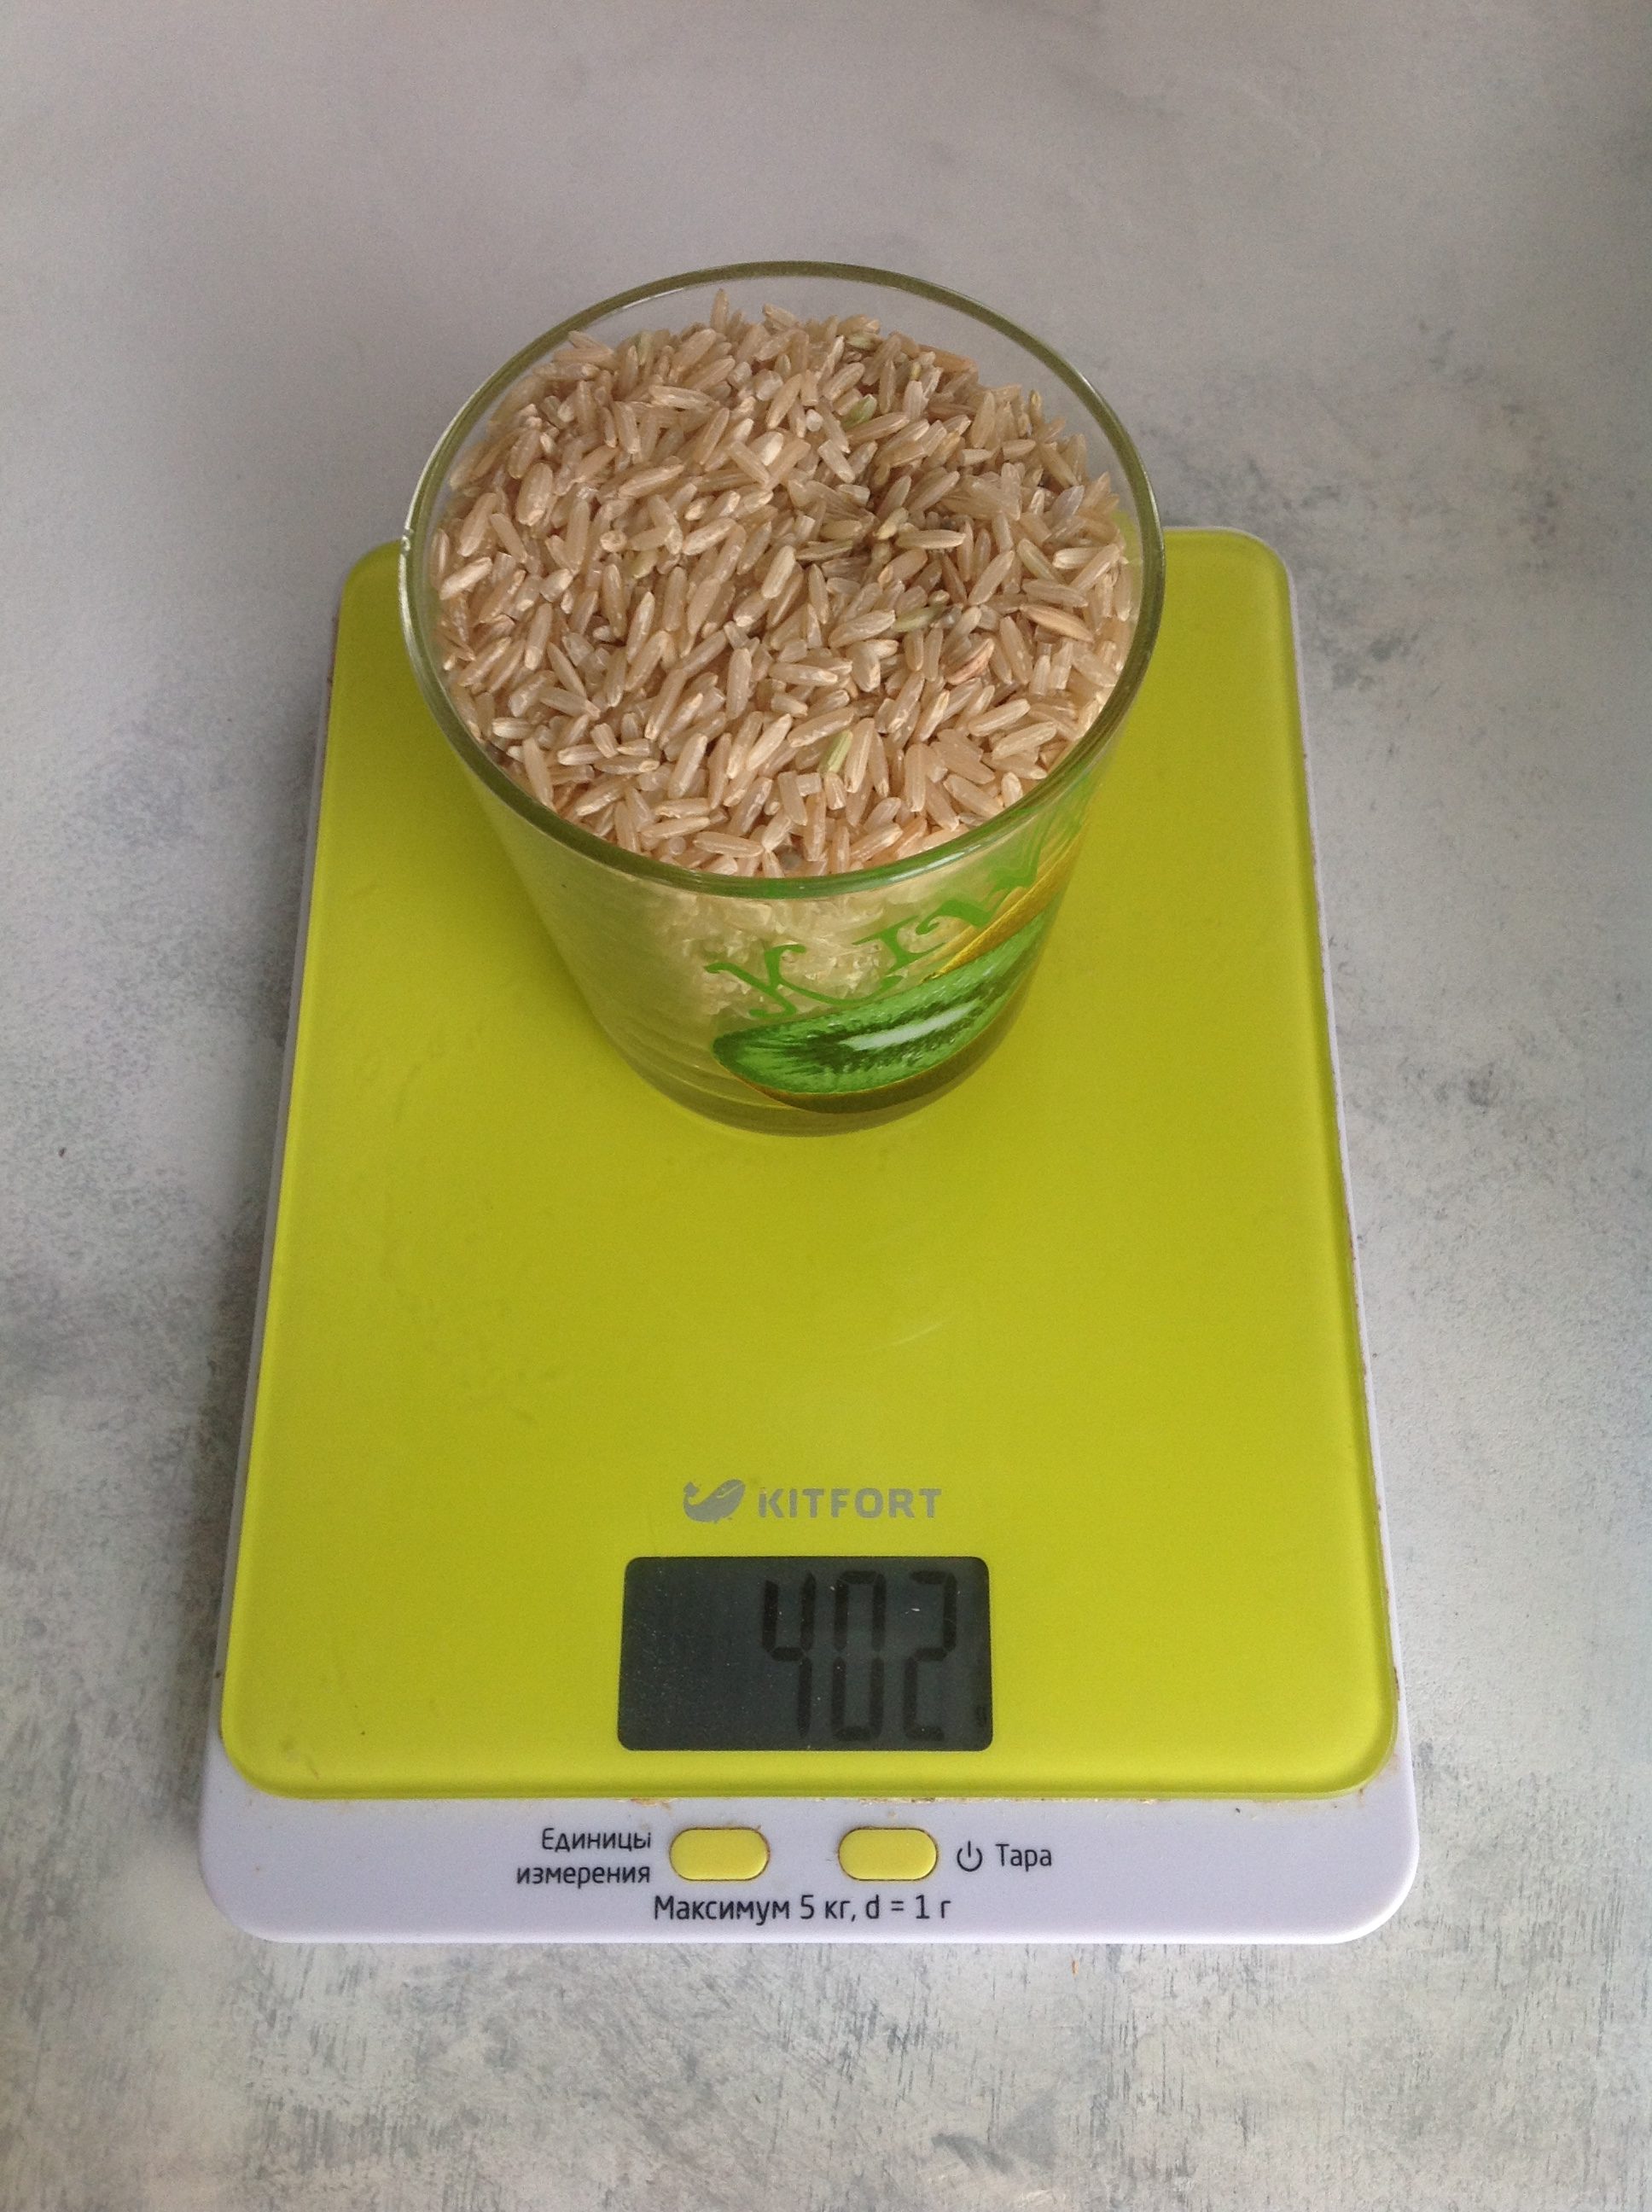 250 毫升杯中的糙米重量